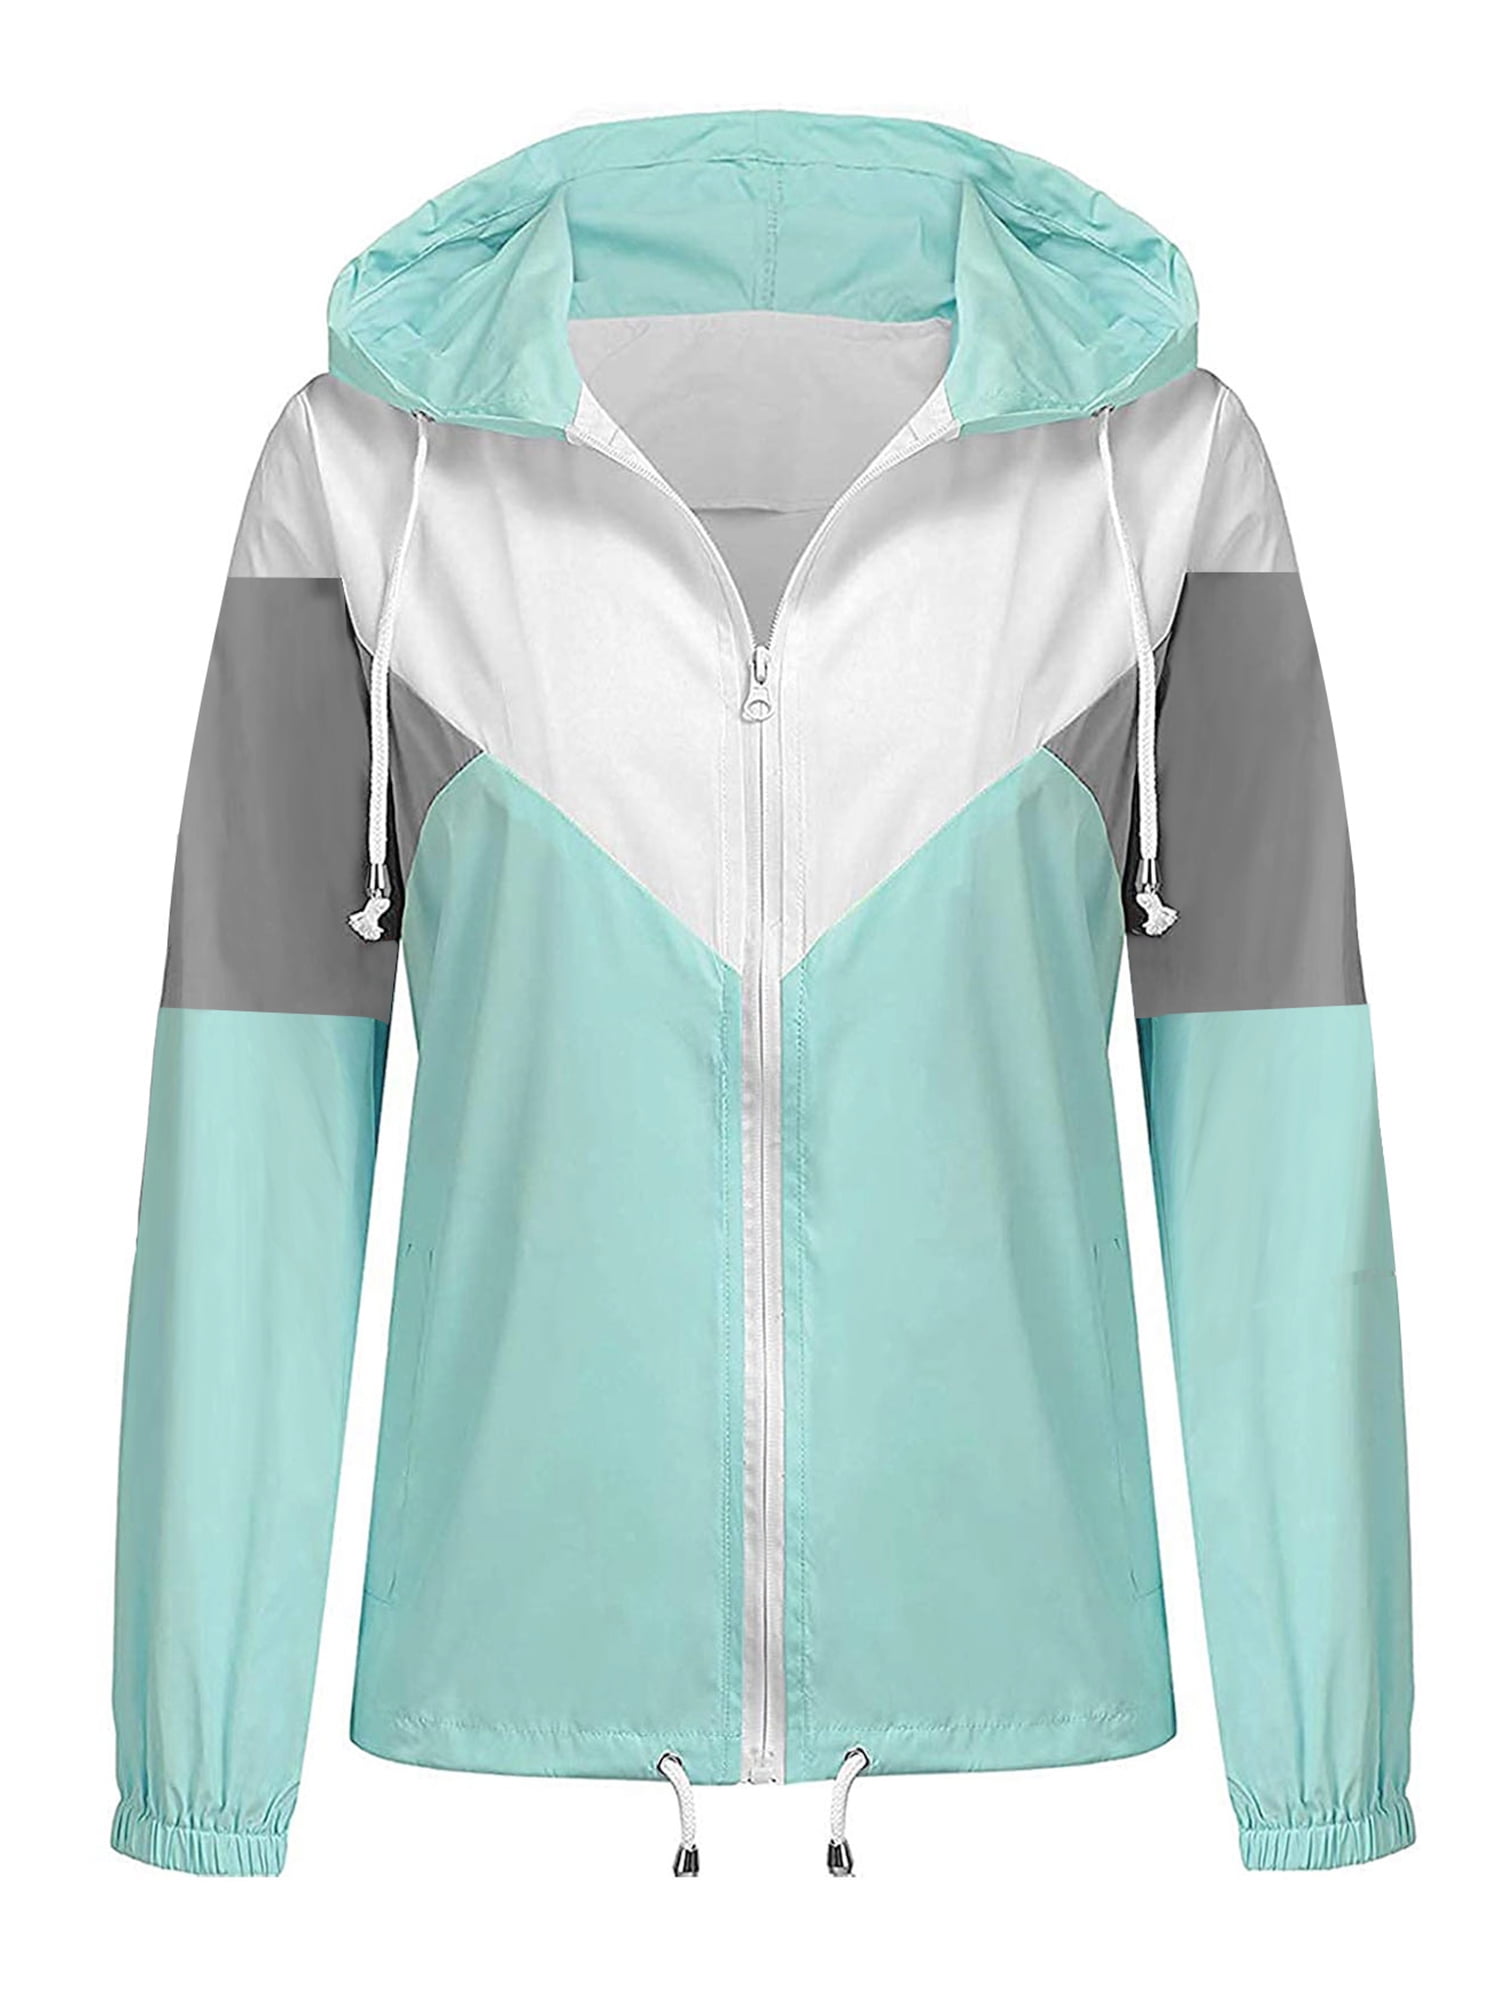 Women's Plus Size Raincoat Rain Jacket Lightweight Waterproof Coat Jacket Windbreaker with Hooded